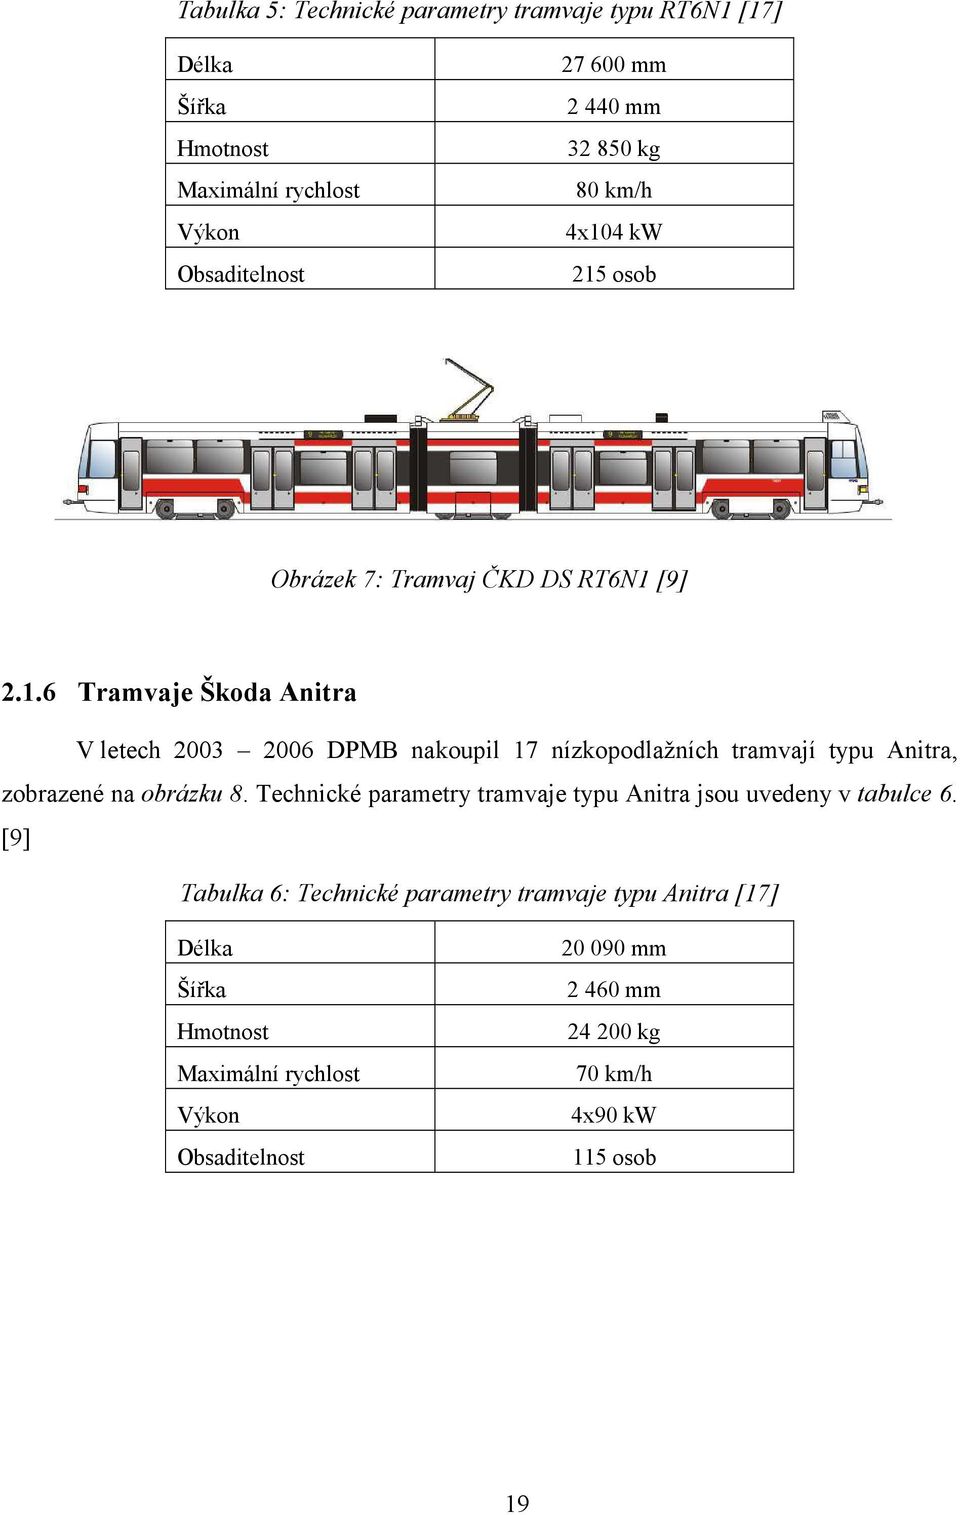 Technické parametry tramvaje typu Anitra jsou uvedeny v tabulce 6.